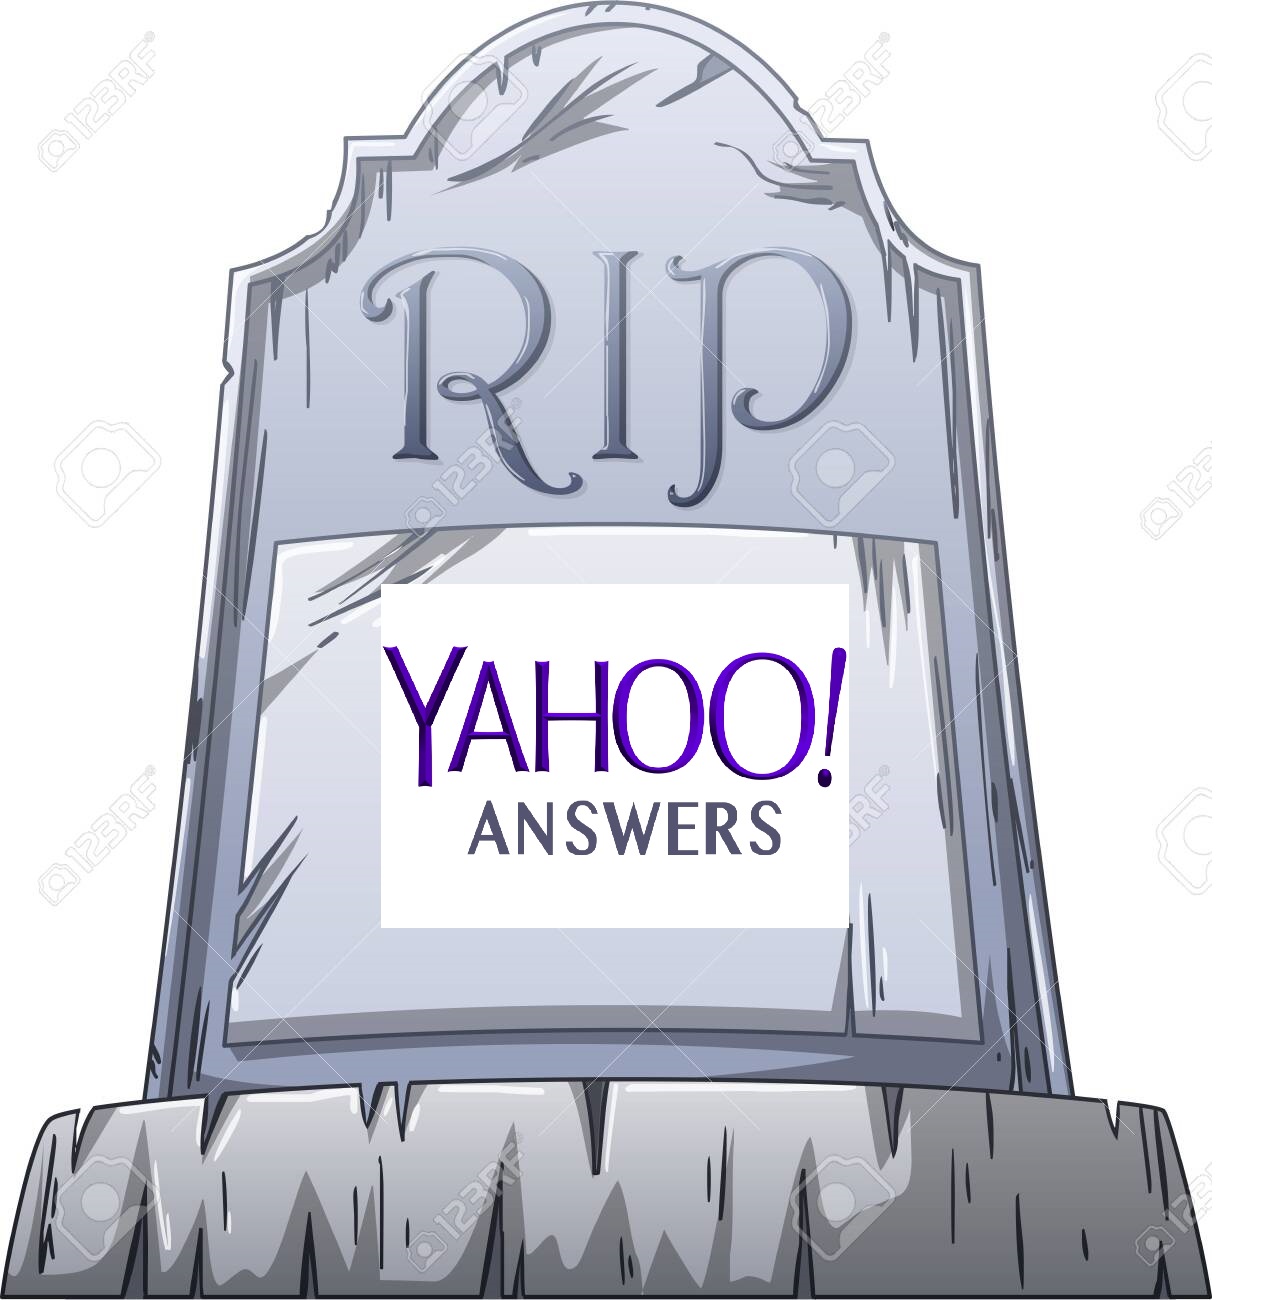 Yahoo Answers soppresso dal 4 Maggio 2021